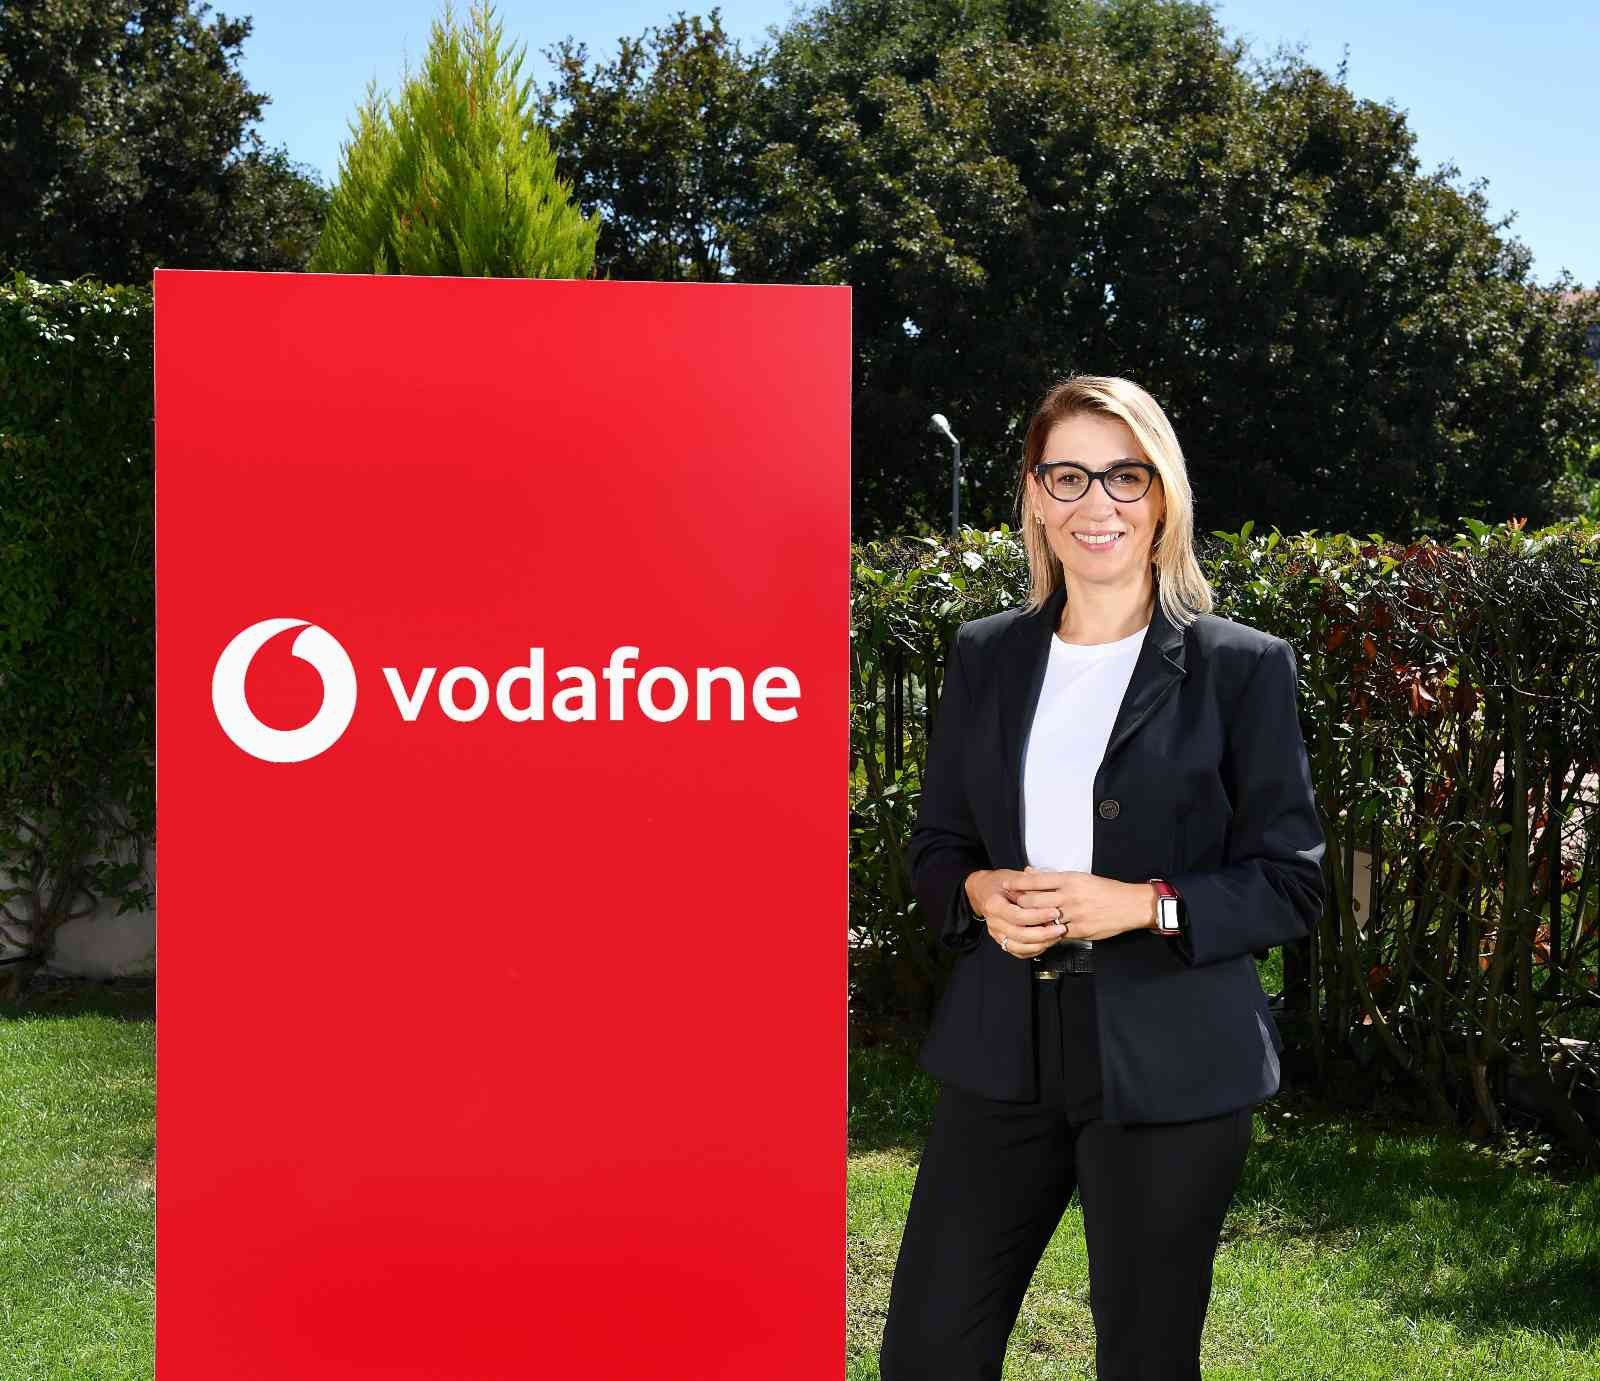 Vodafone, Türkiye telekom sektöründe Metaverse’de mağaza açan ilk operatörlerden biri oldu. Operatörün yeni nesil perakende anlayışına uygun ...